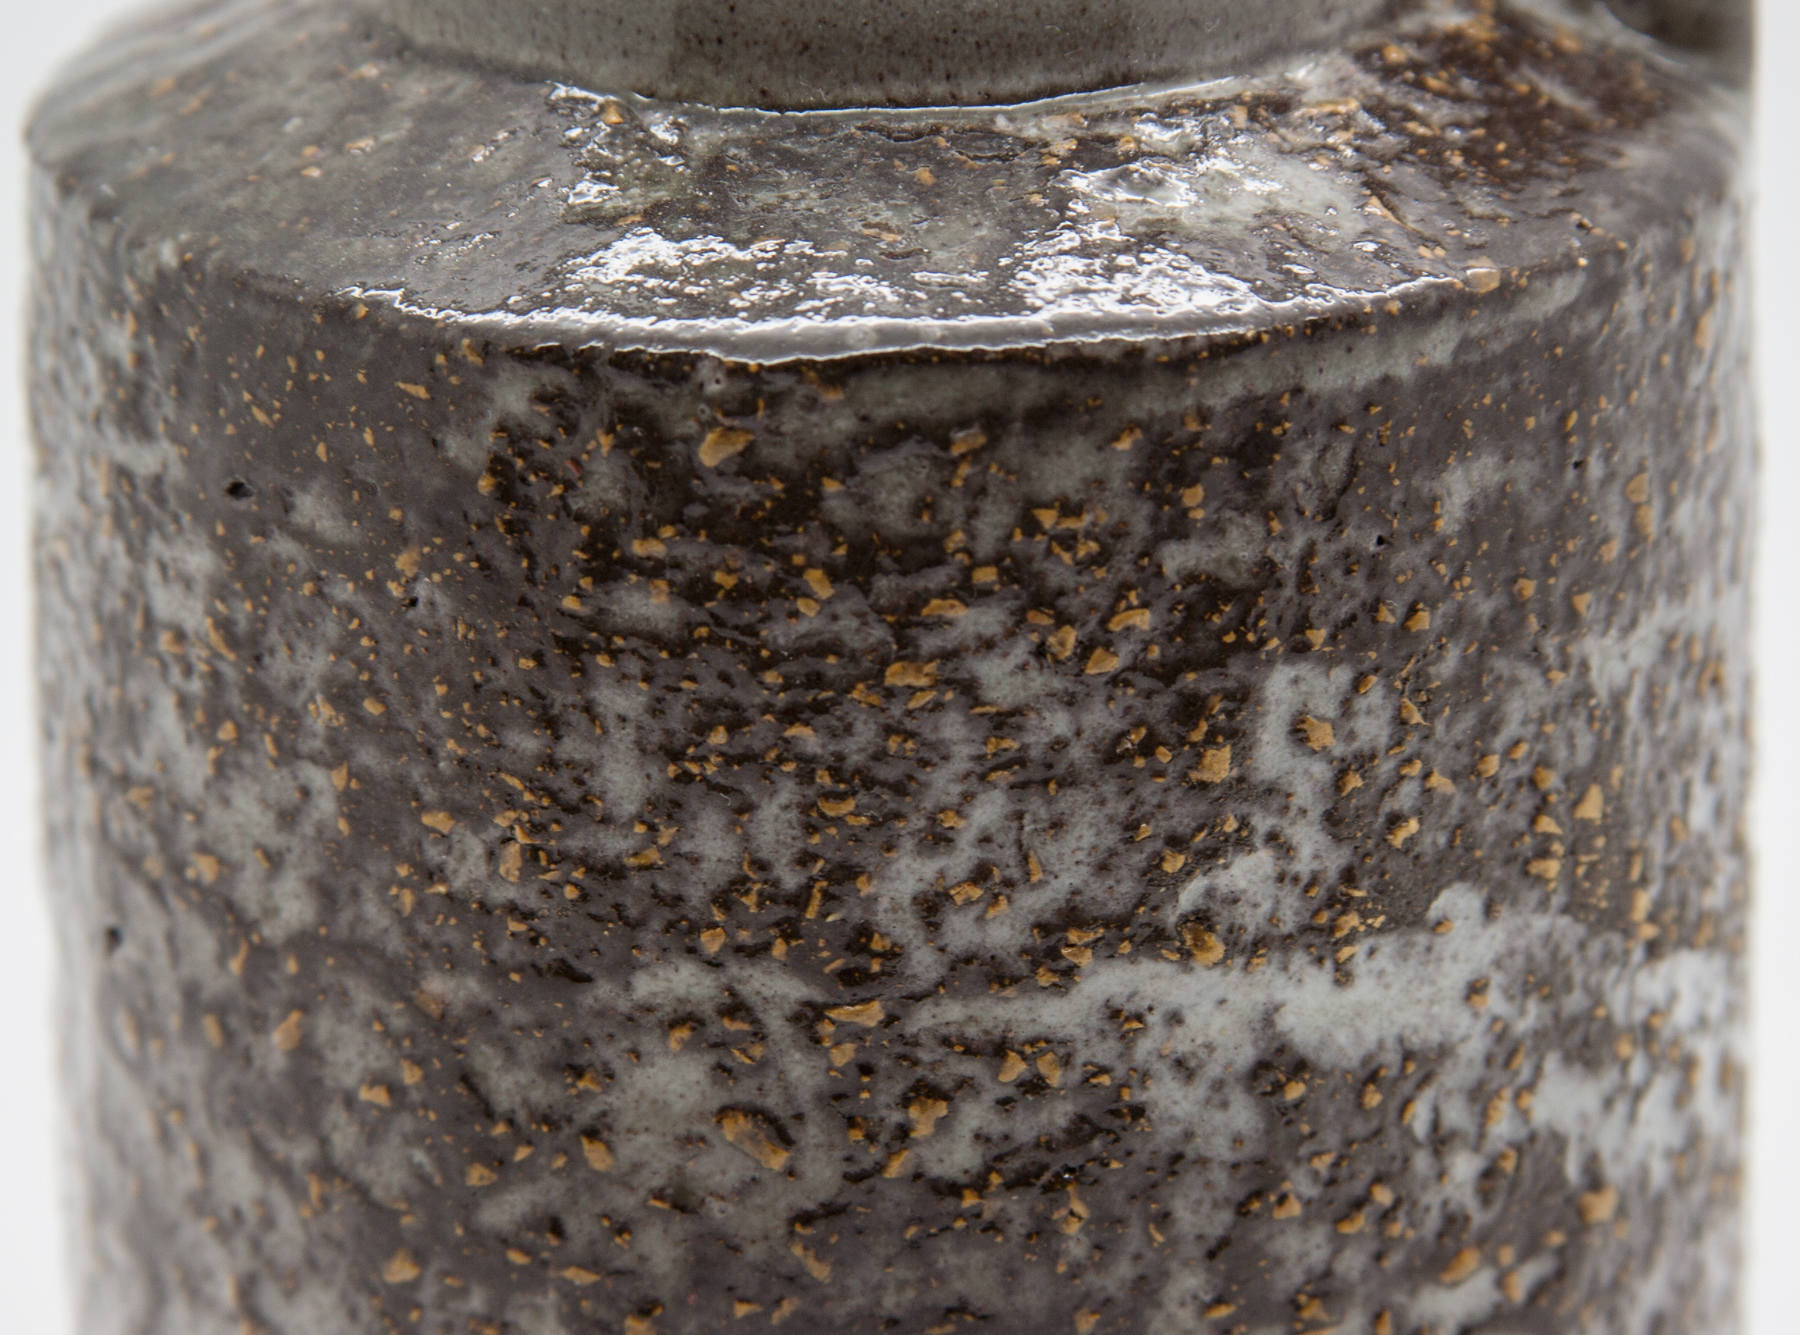 Upsala Ekeby INGRID ATTERBERG Jug Stoneware Vase Mollaris.com 